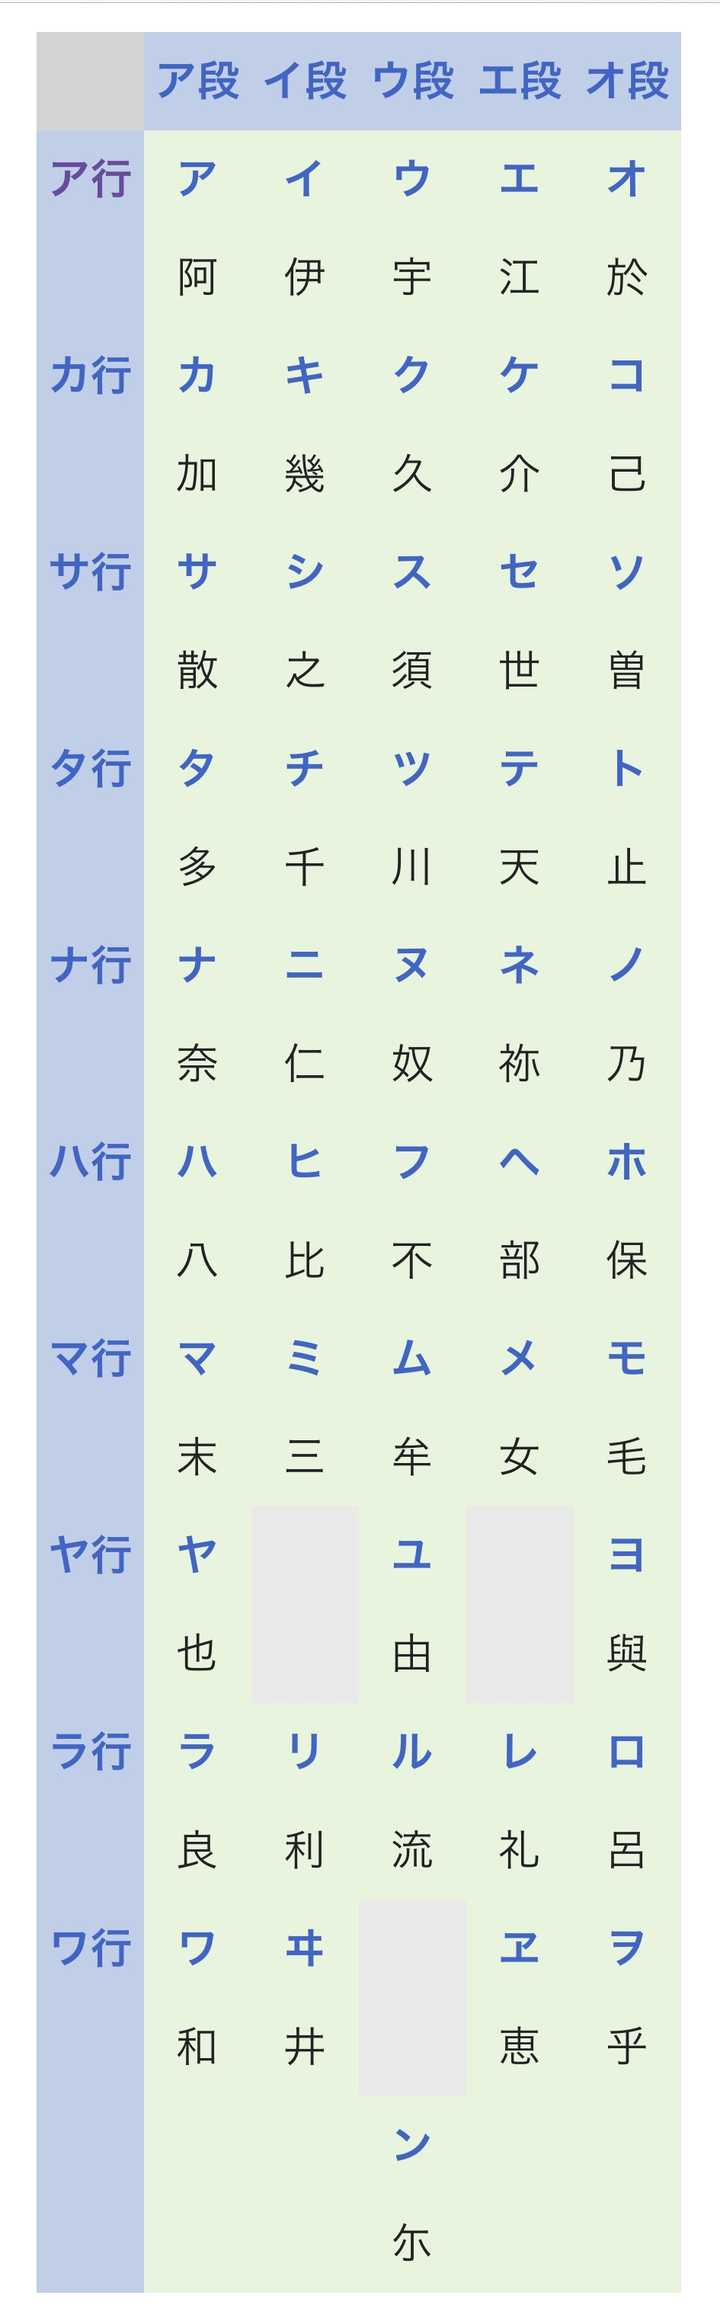 日语的五十音图,假名,汉字之间有什么关系?